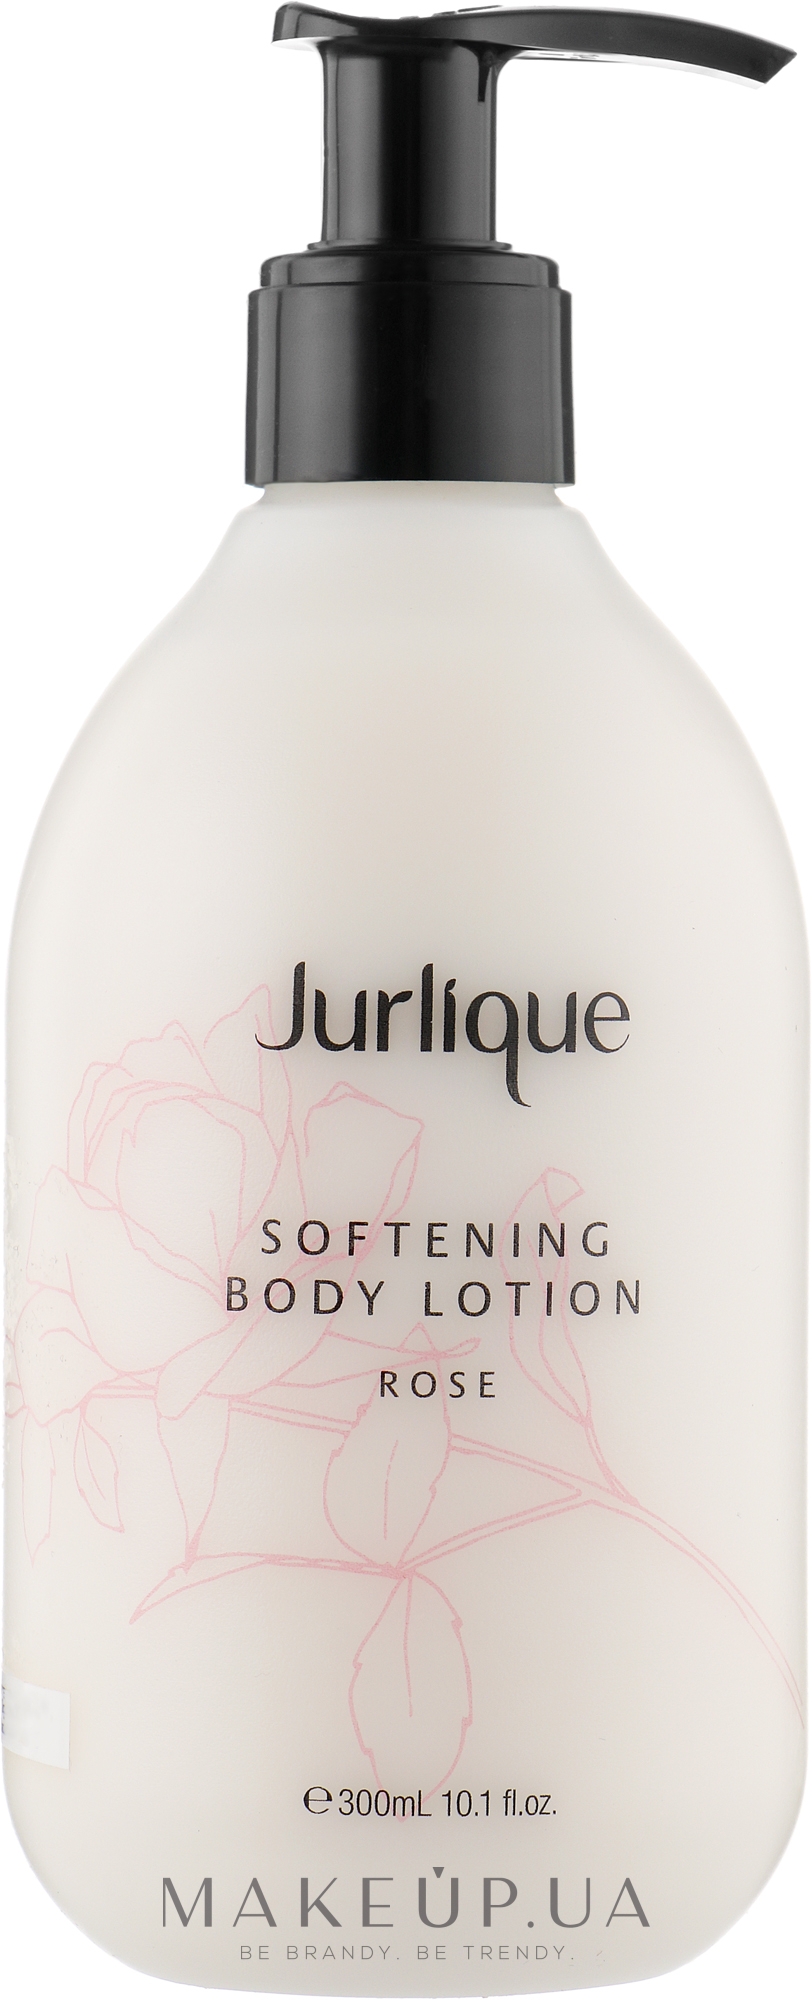 Пом'якшувальний крем для тіла з екстрактом троянди - Jurlique Softening Body Lotion Rose — фото 300ml